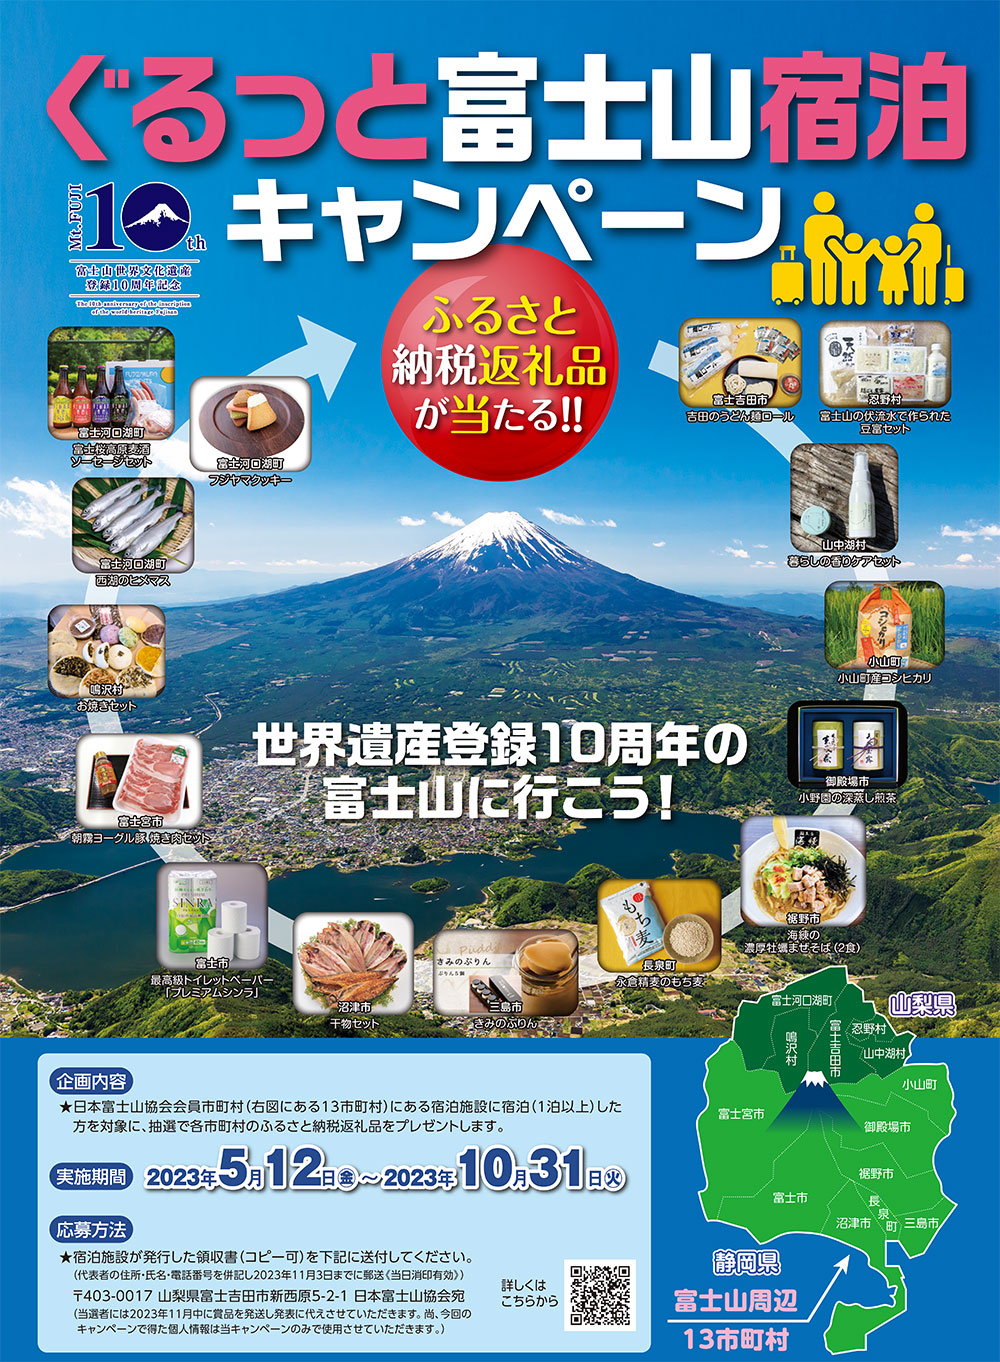 ぐるっと富士山宿泊キャンペーン